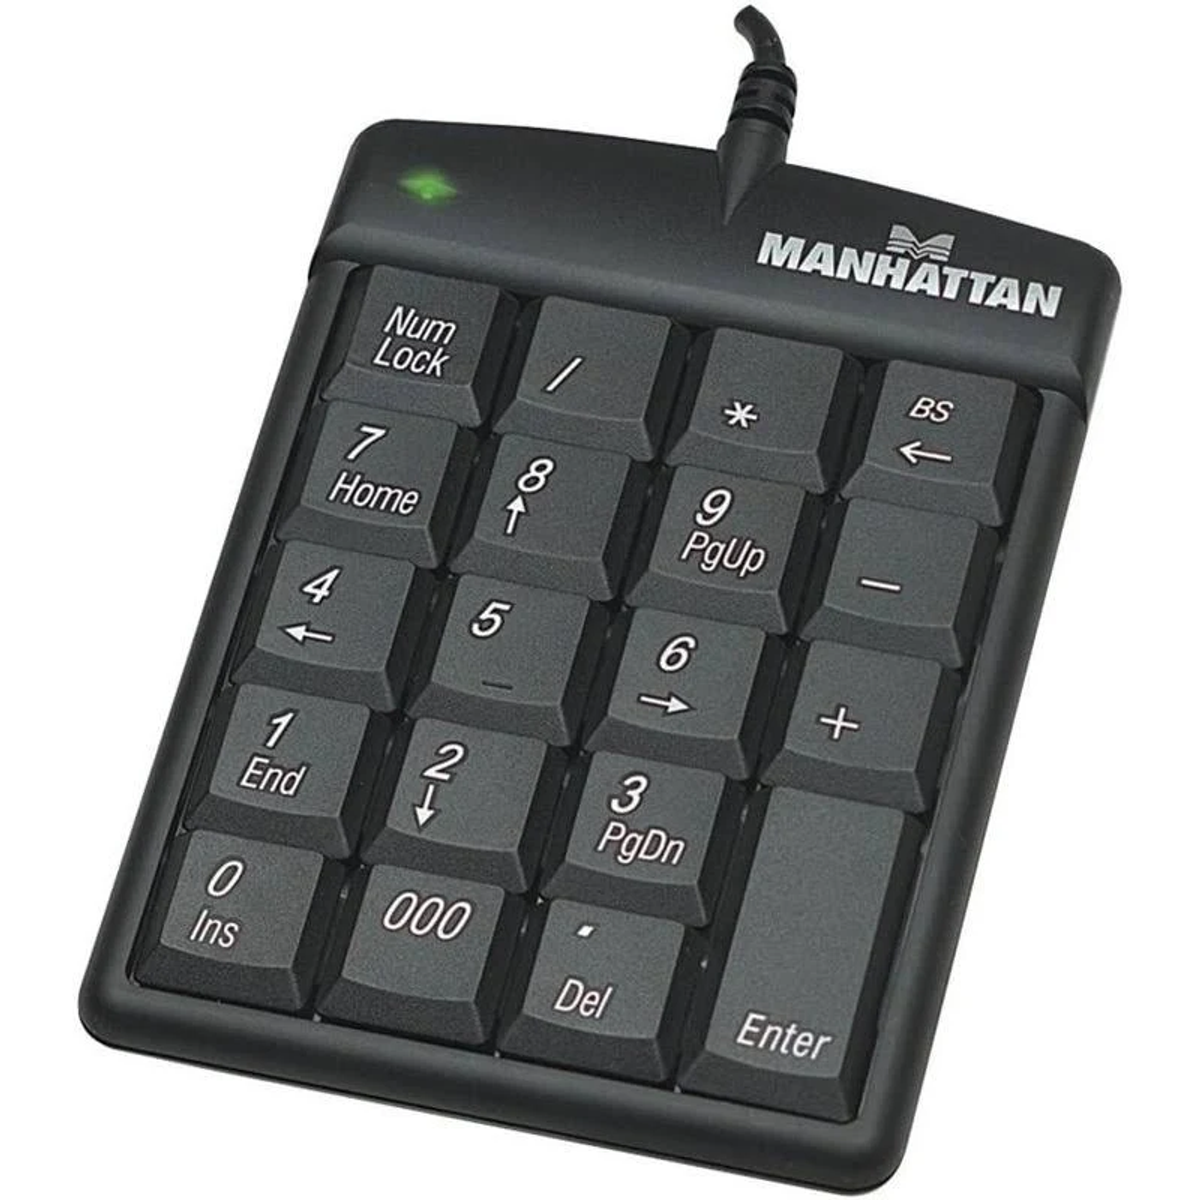 MANHATTAN MANHATTAN USB-Nummernblock Eingabe / Tastatur Ausgabe Tastaturen